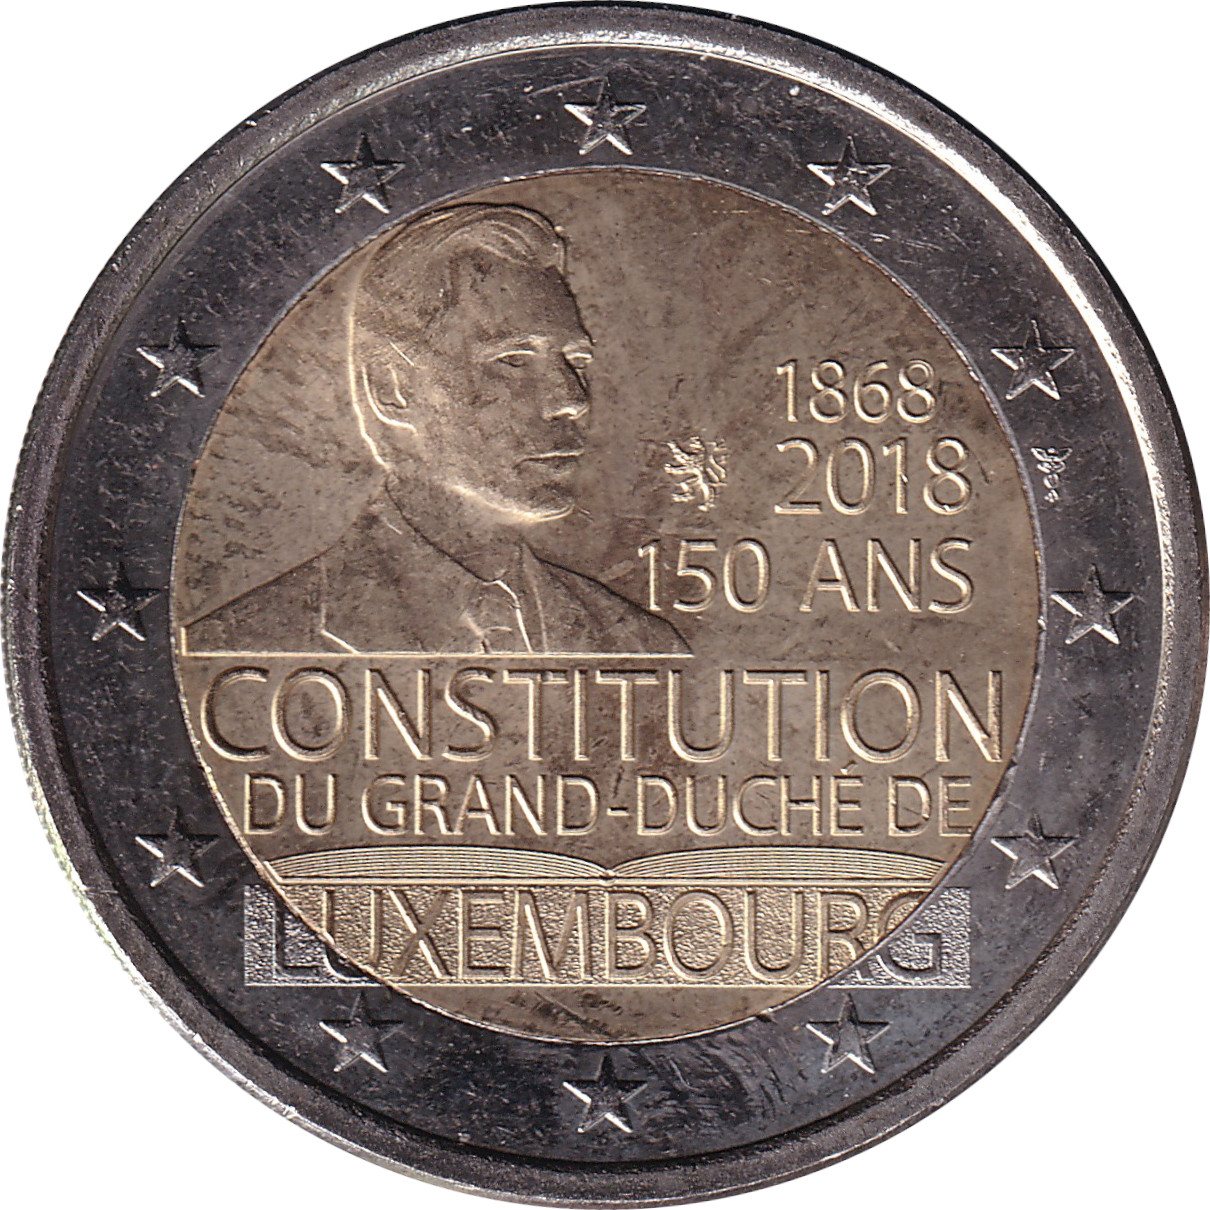 2 euro - Constitution - 150 ans